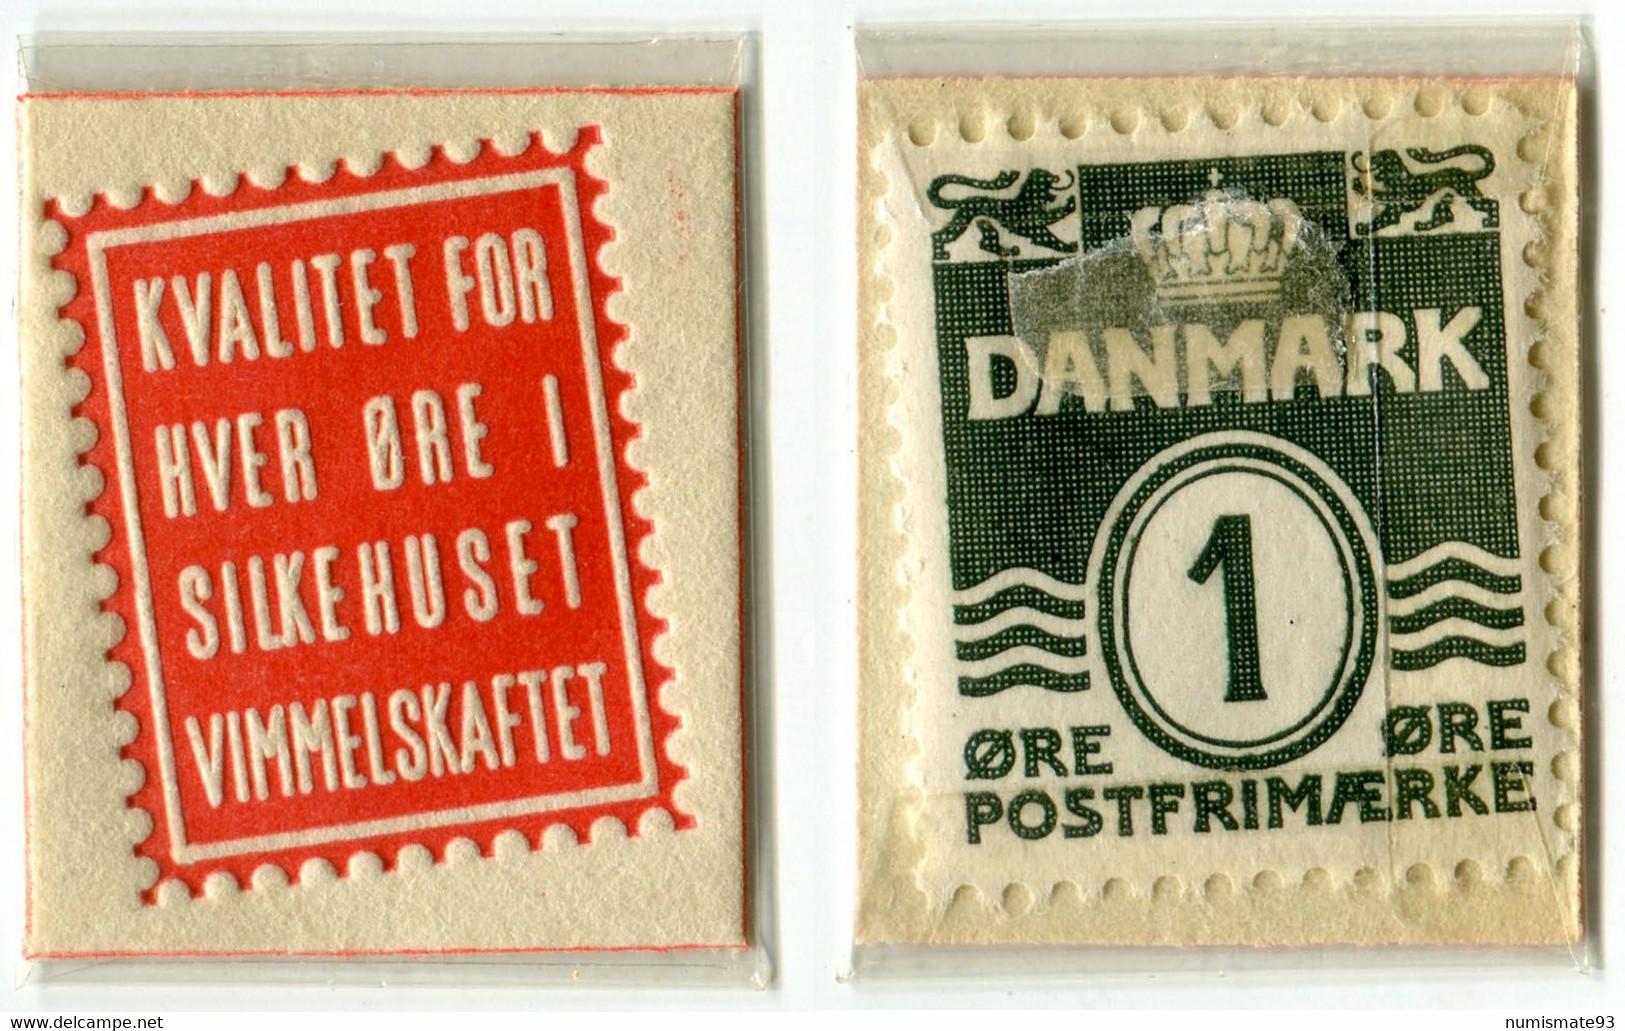 N93-0708 - Timbre-monnaie - Danemark - Kvalitet For Hver øre I Silkehuset Vimmelskaftet - 1 øre - Encased Stamp - Noodgeld